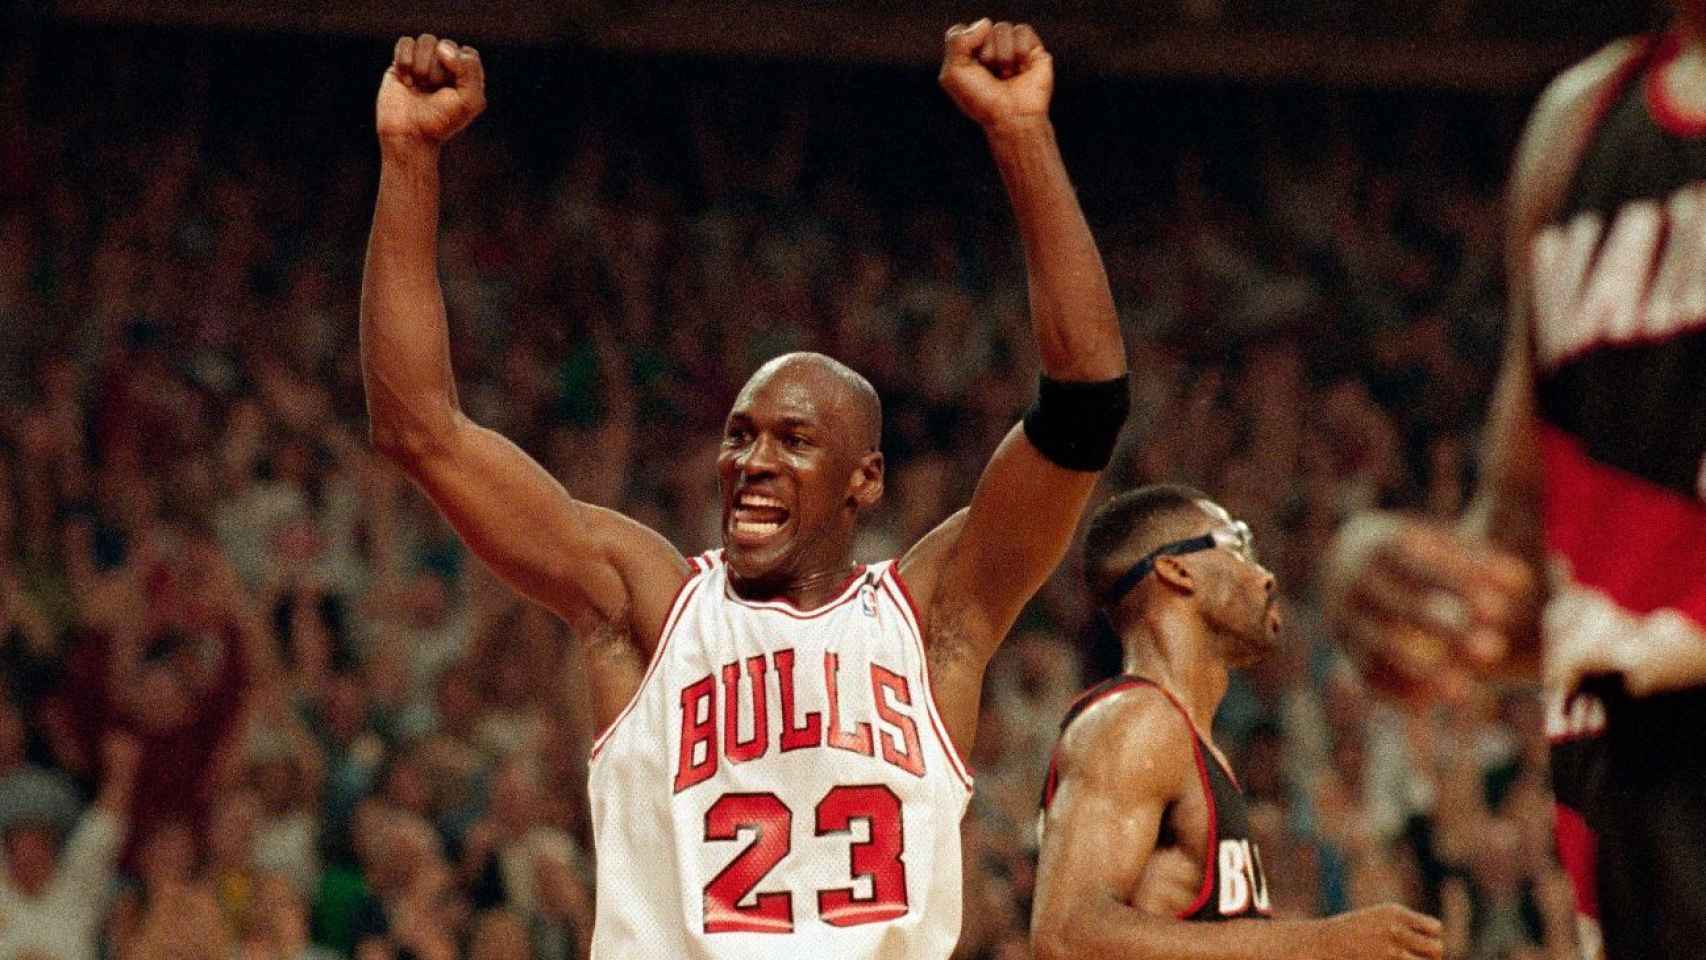 Michael jordan celebrando un triunfo más en los Bulls.